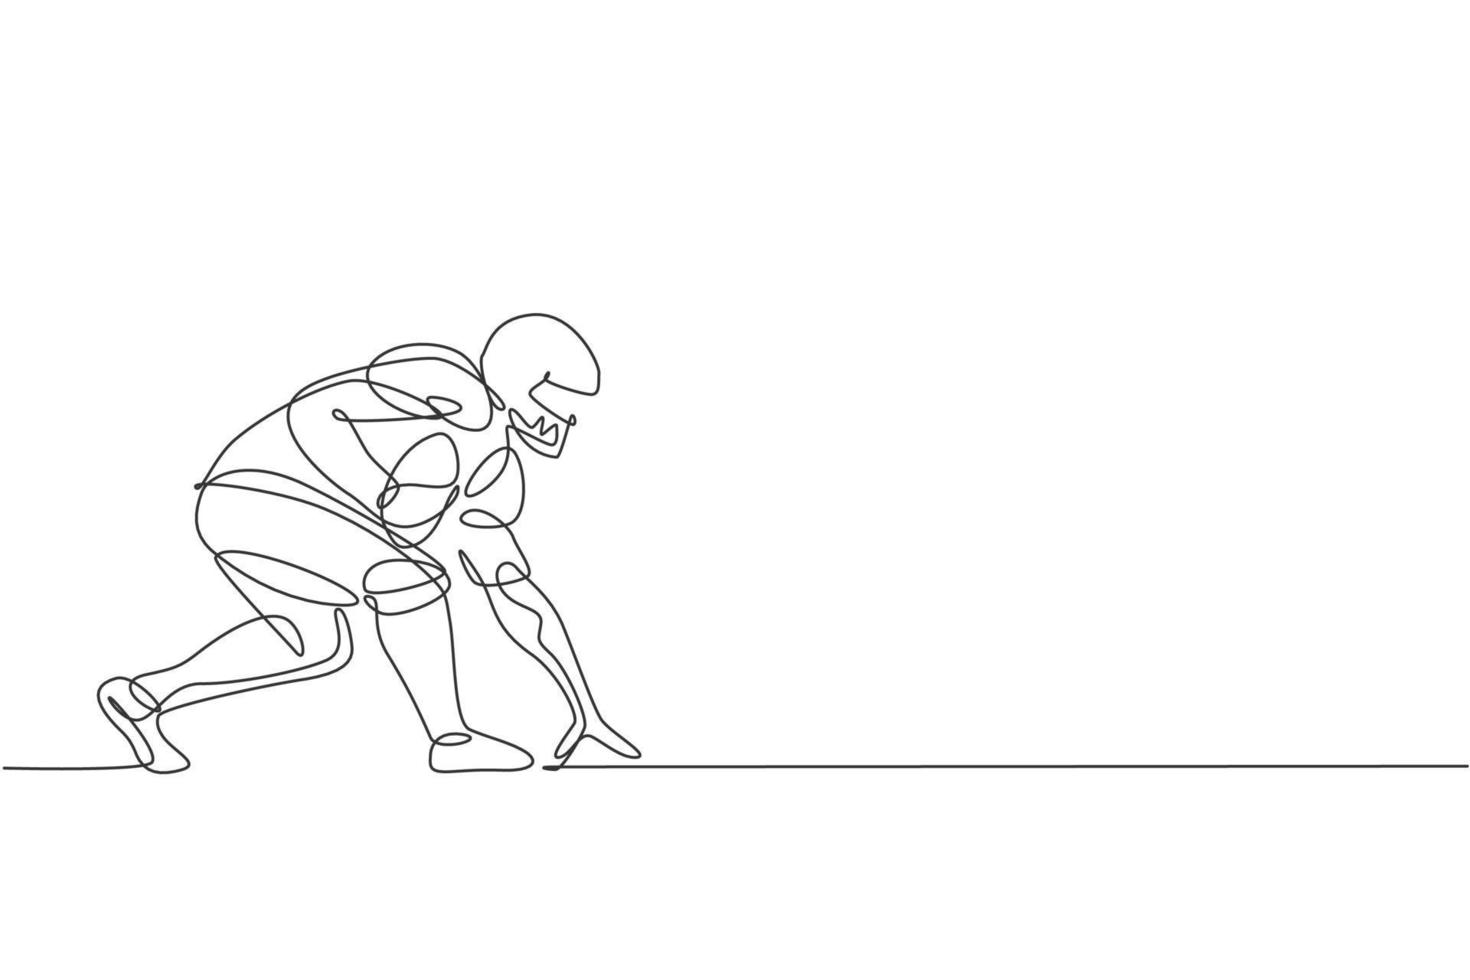 un dibujo de línea continua de la postura del joven jugador de fútbol americano para correr rápido para alcanzar la línea de gol para el afiche de la competencia. concepto de trabajo en equipo deportivo. Ilustración de vector de diseño de dibujo de línea única dinámica